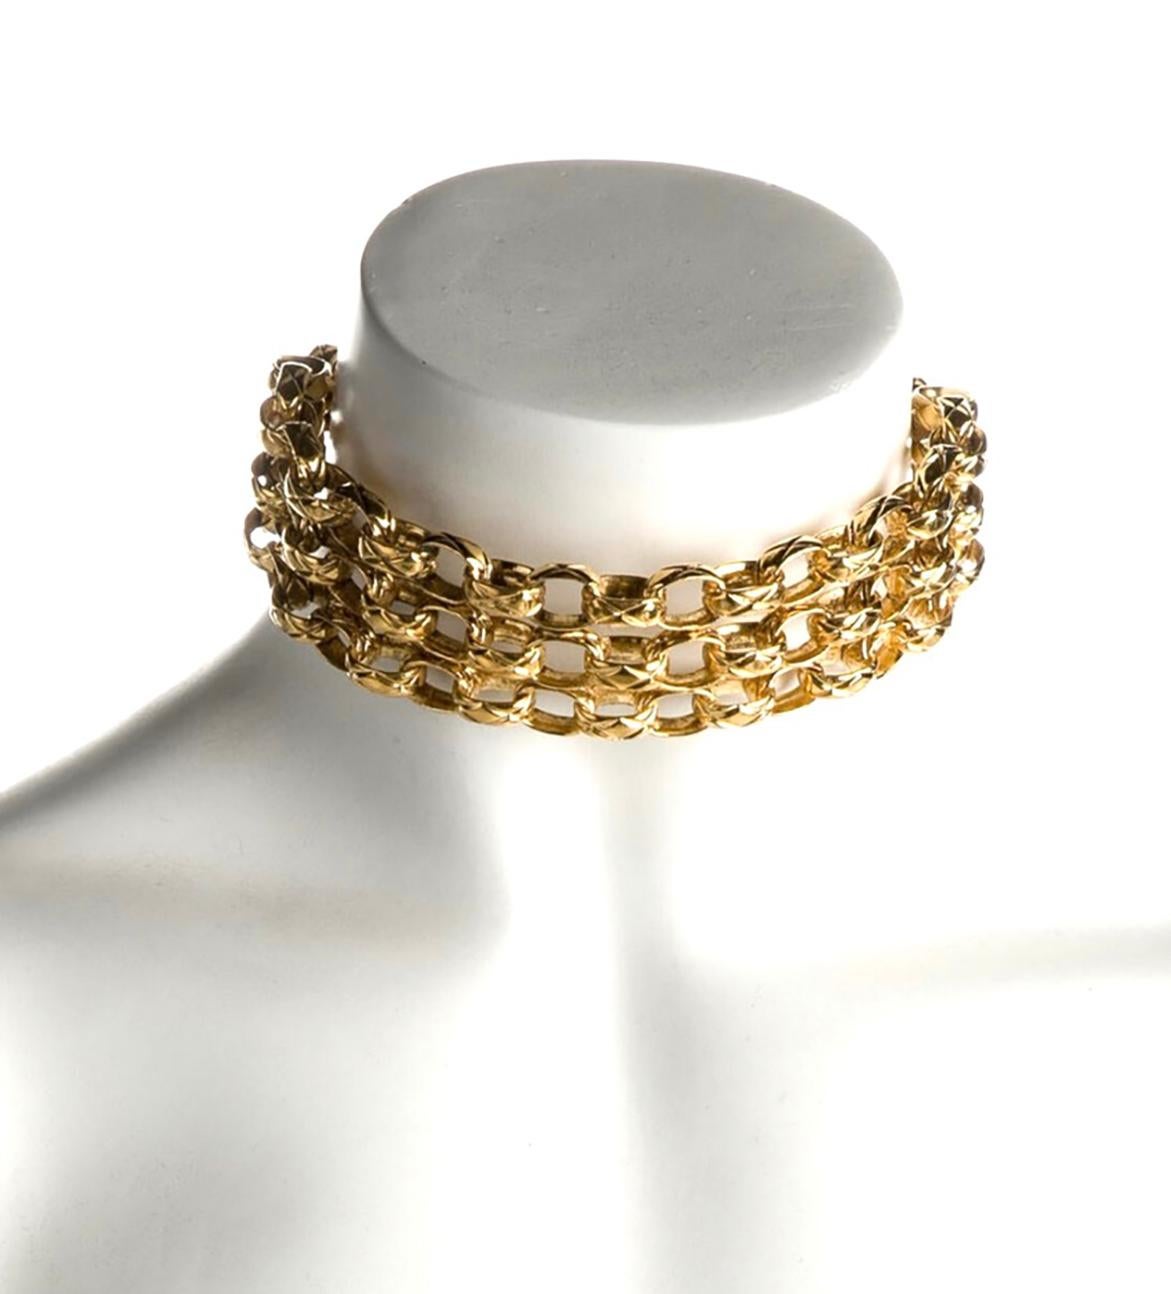 1984 Chanel Kollektion 23
vergoldete gripoix kette halsband
Zustand: sehr gut